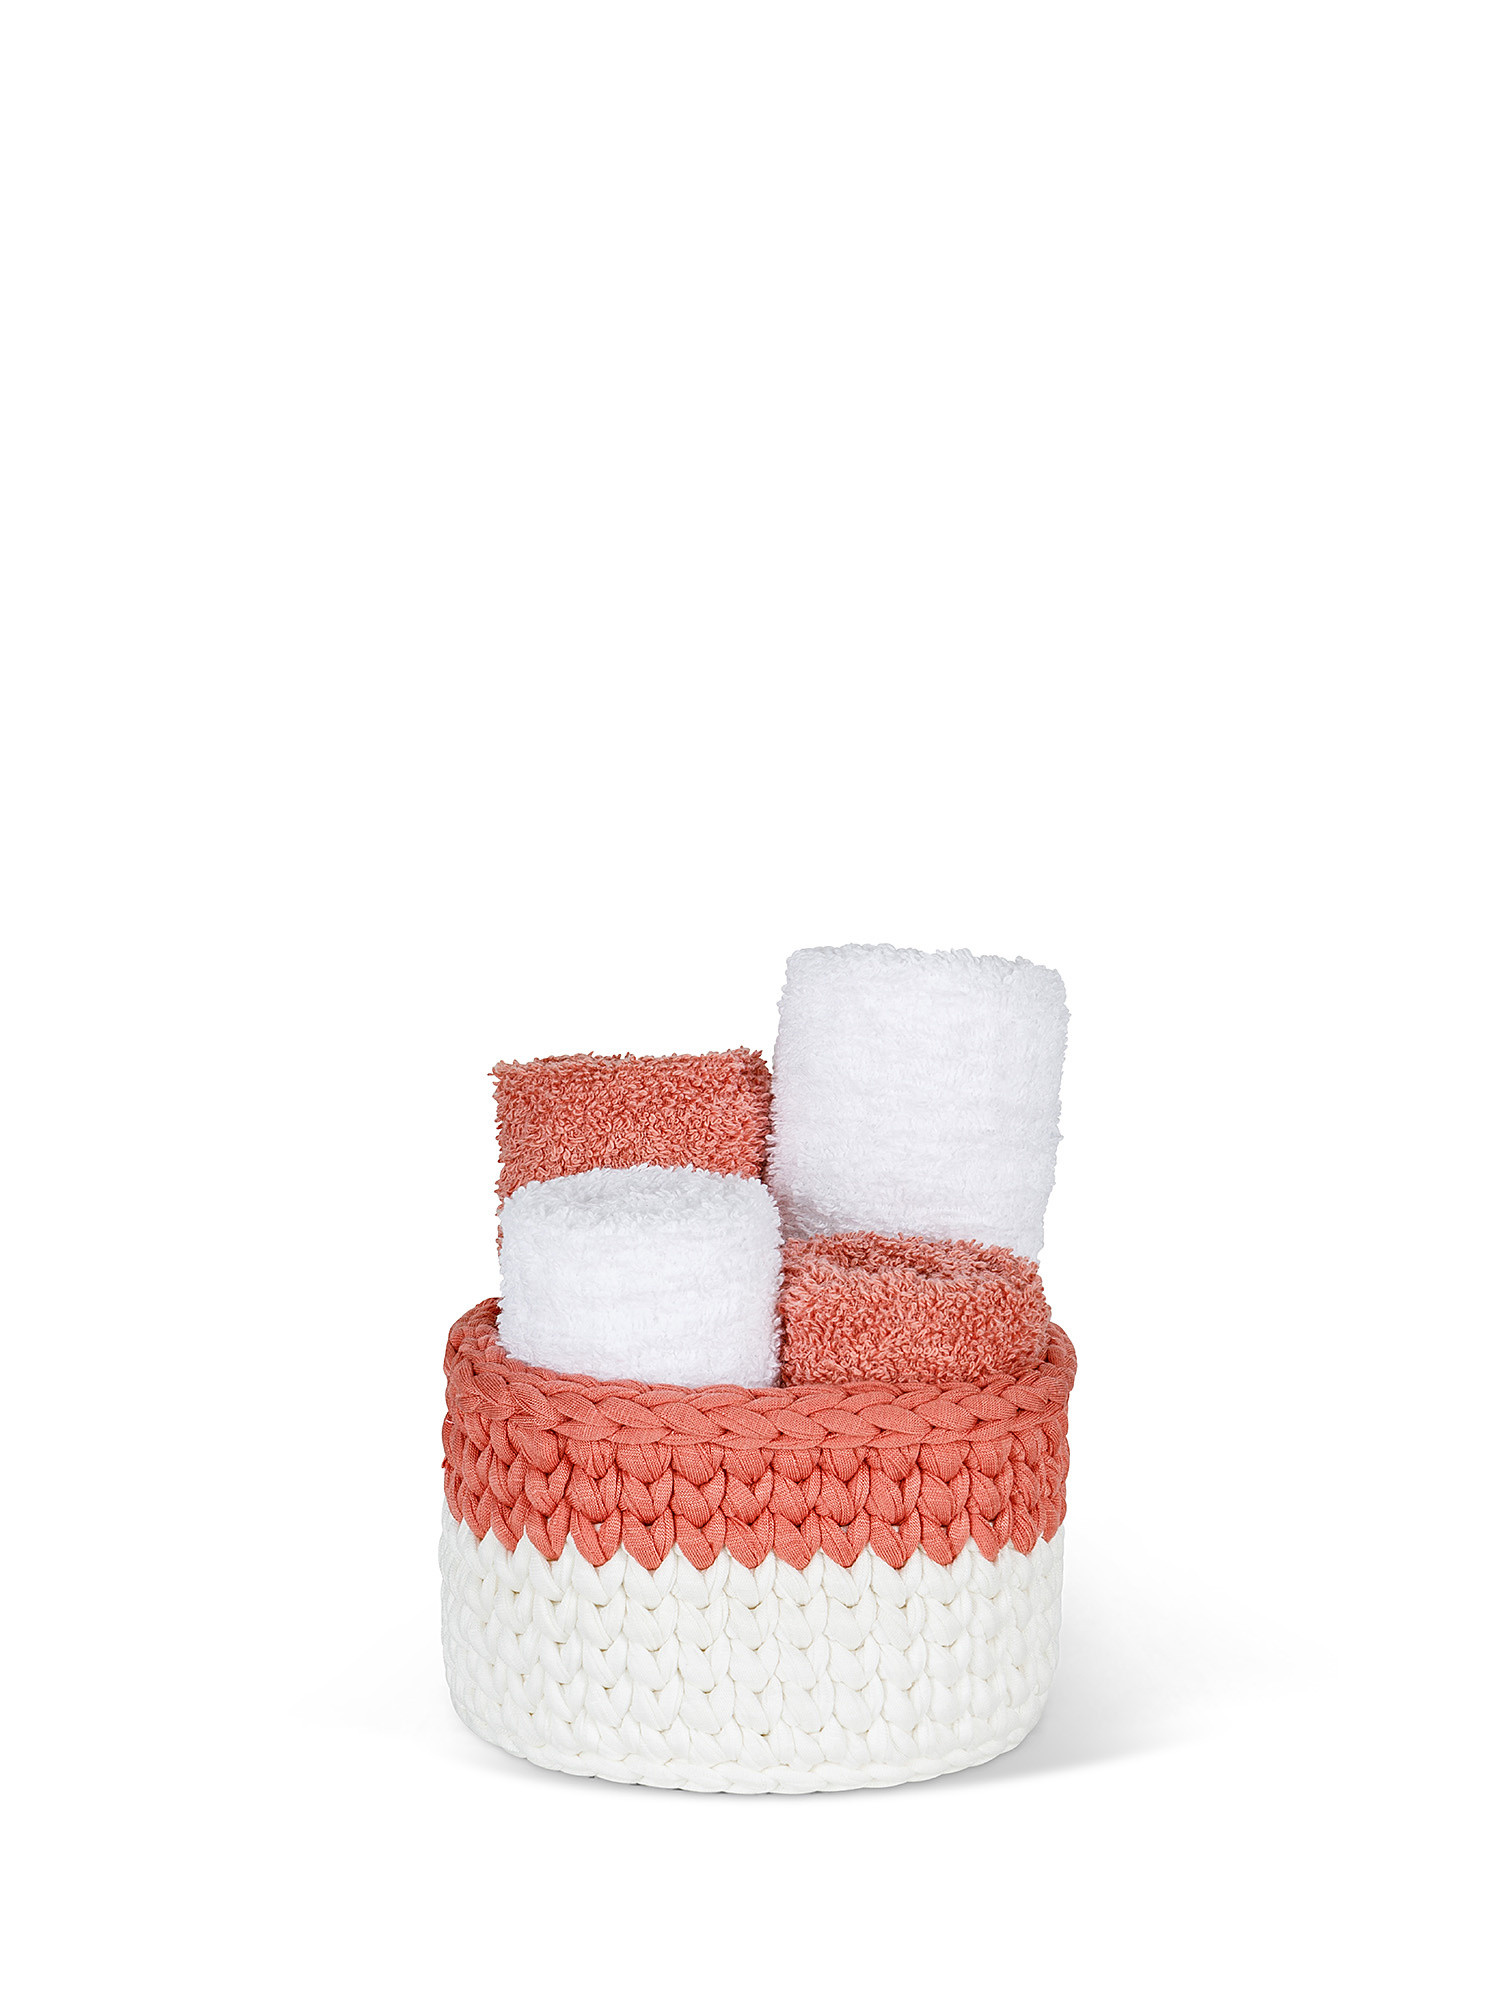 Basket 4 plain colored cotton washcloths, Pink, large image number 0